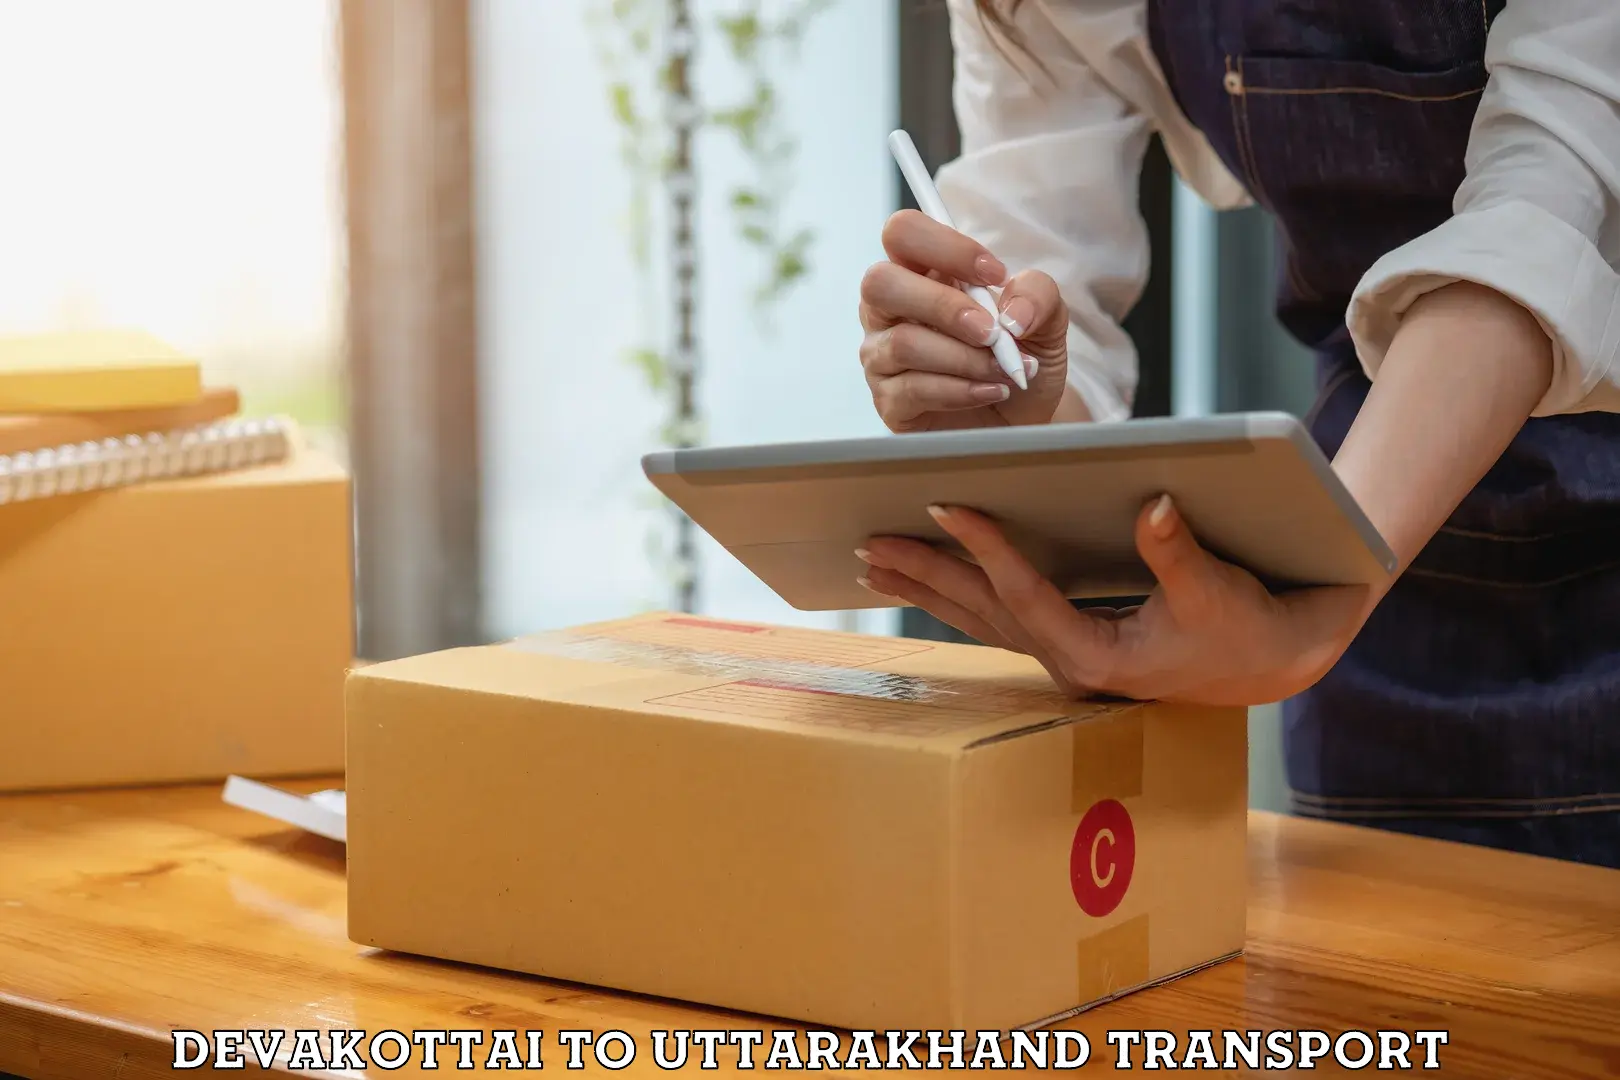 Goods delivery service Devakottai to Dwarahat